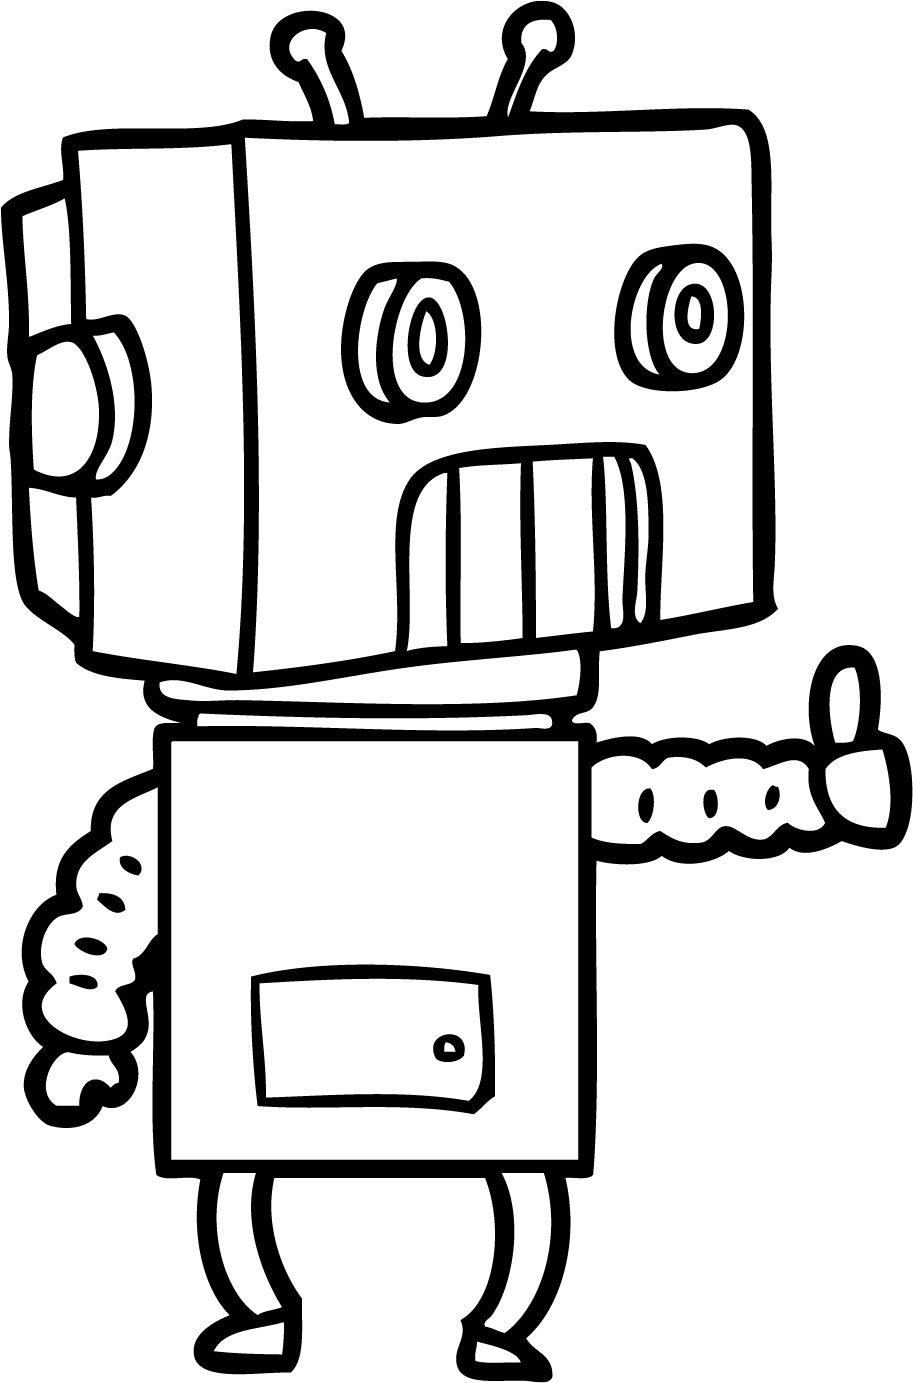 kid robot image